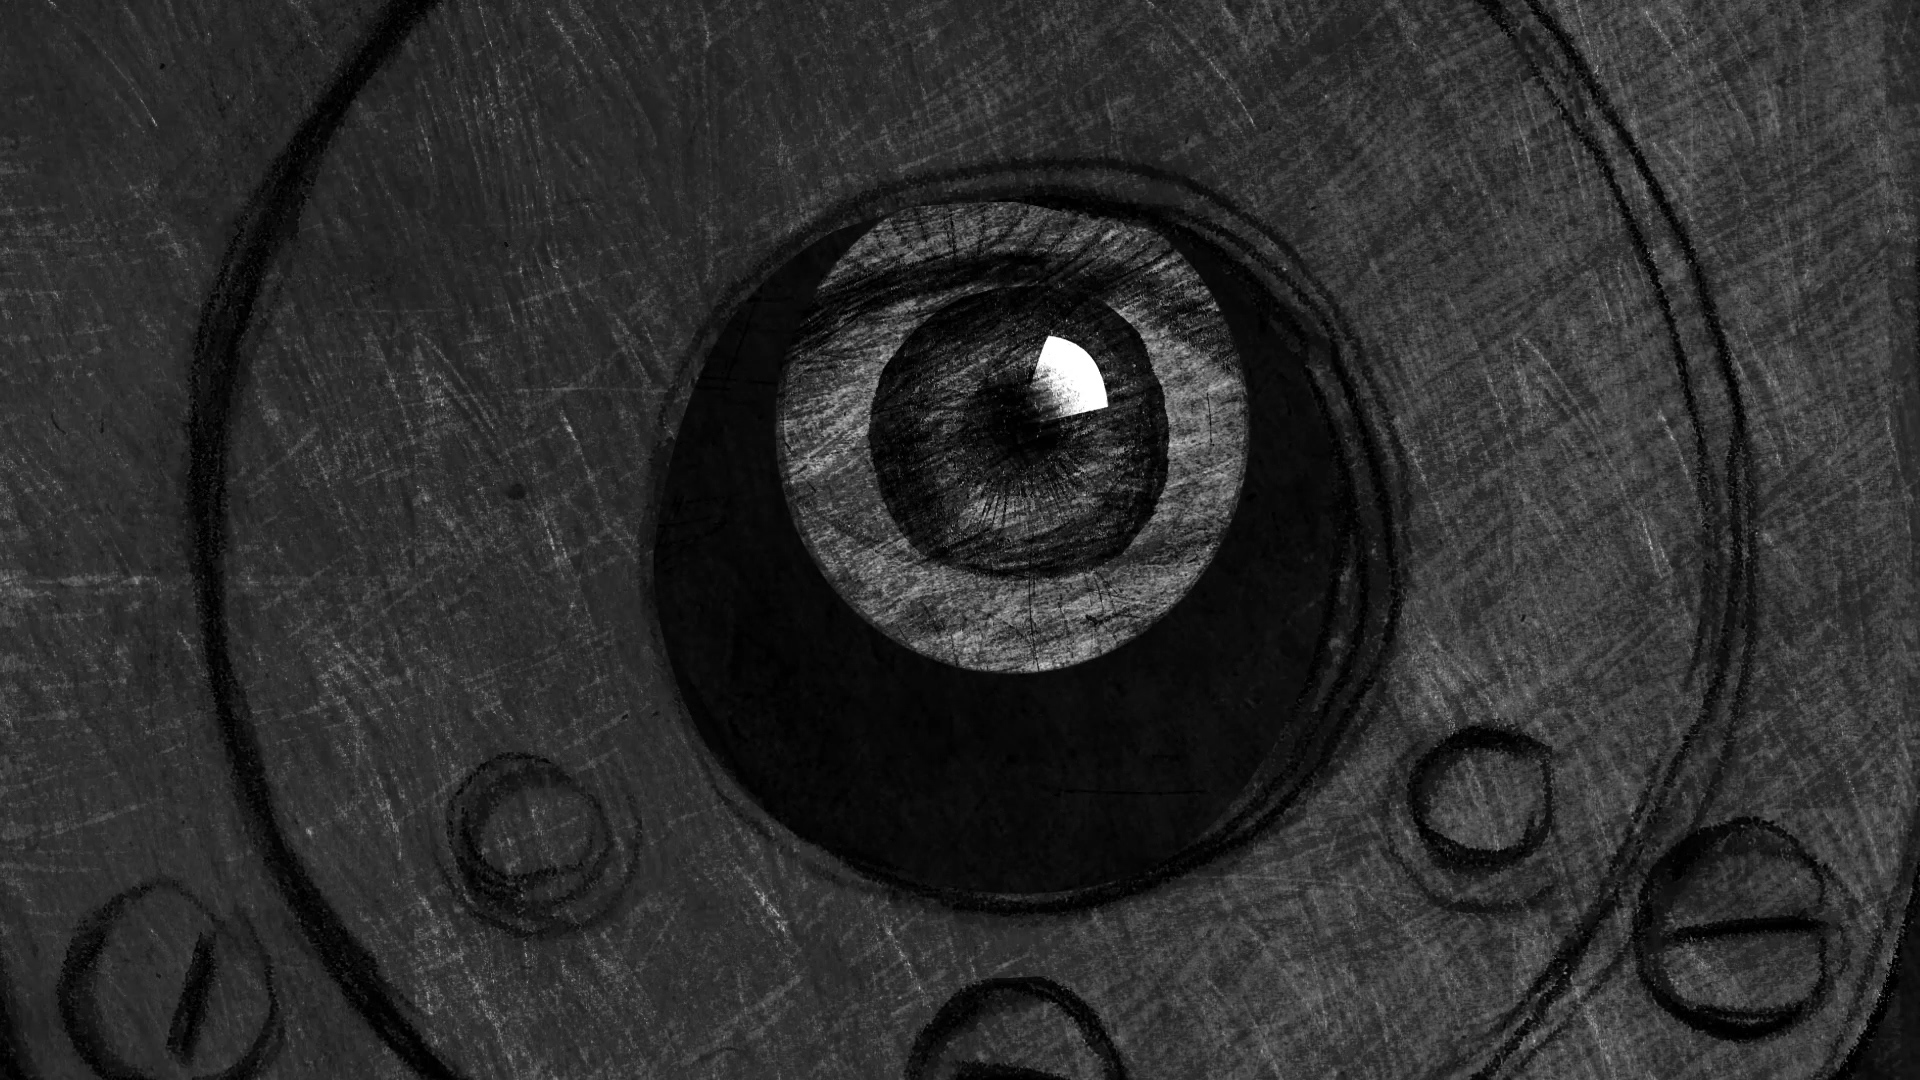 animation of a peephole